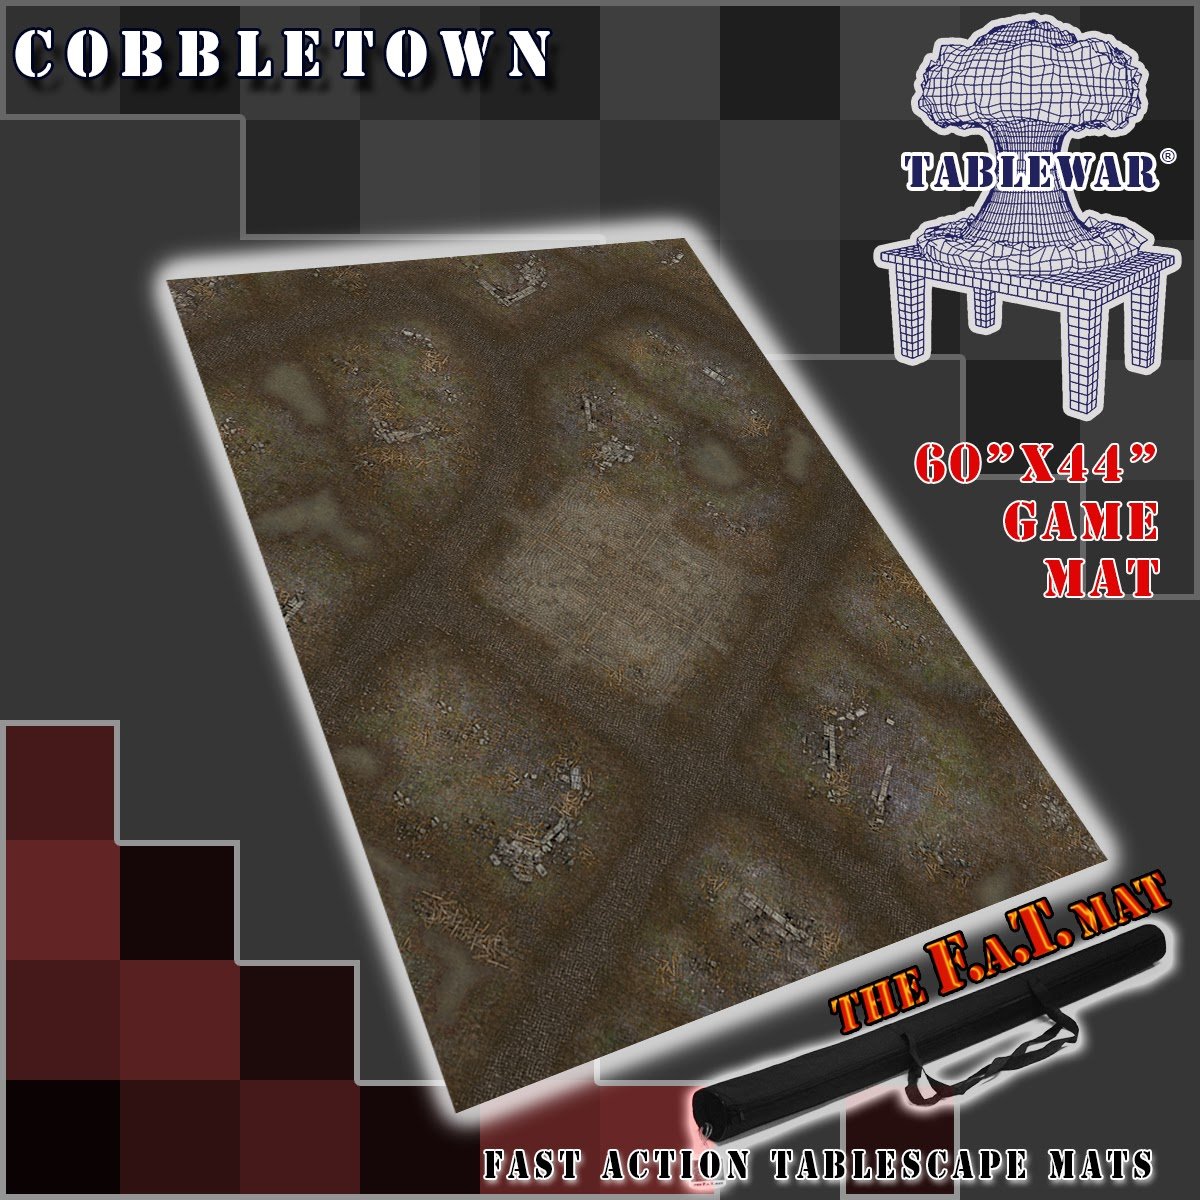 F.A.T. Mats: Cobble Town 60"X44" 